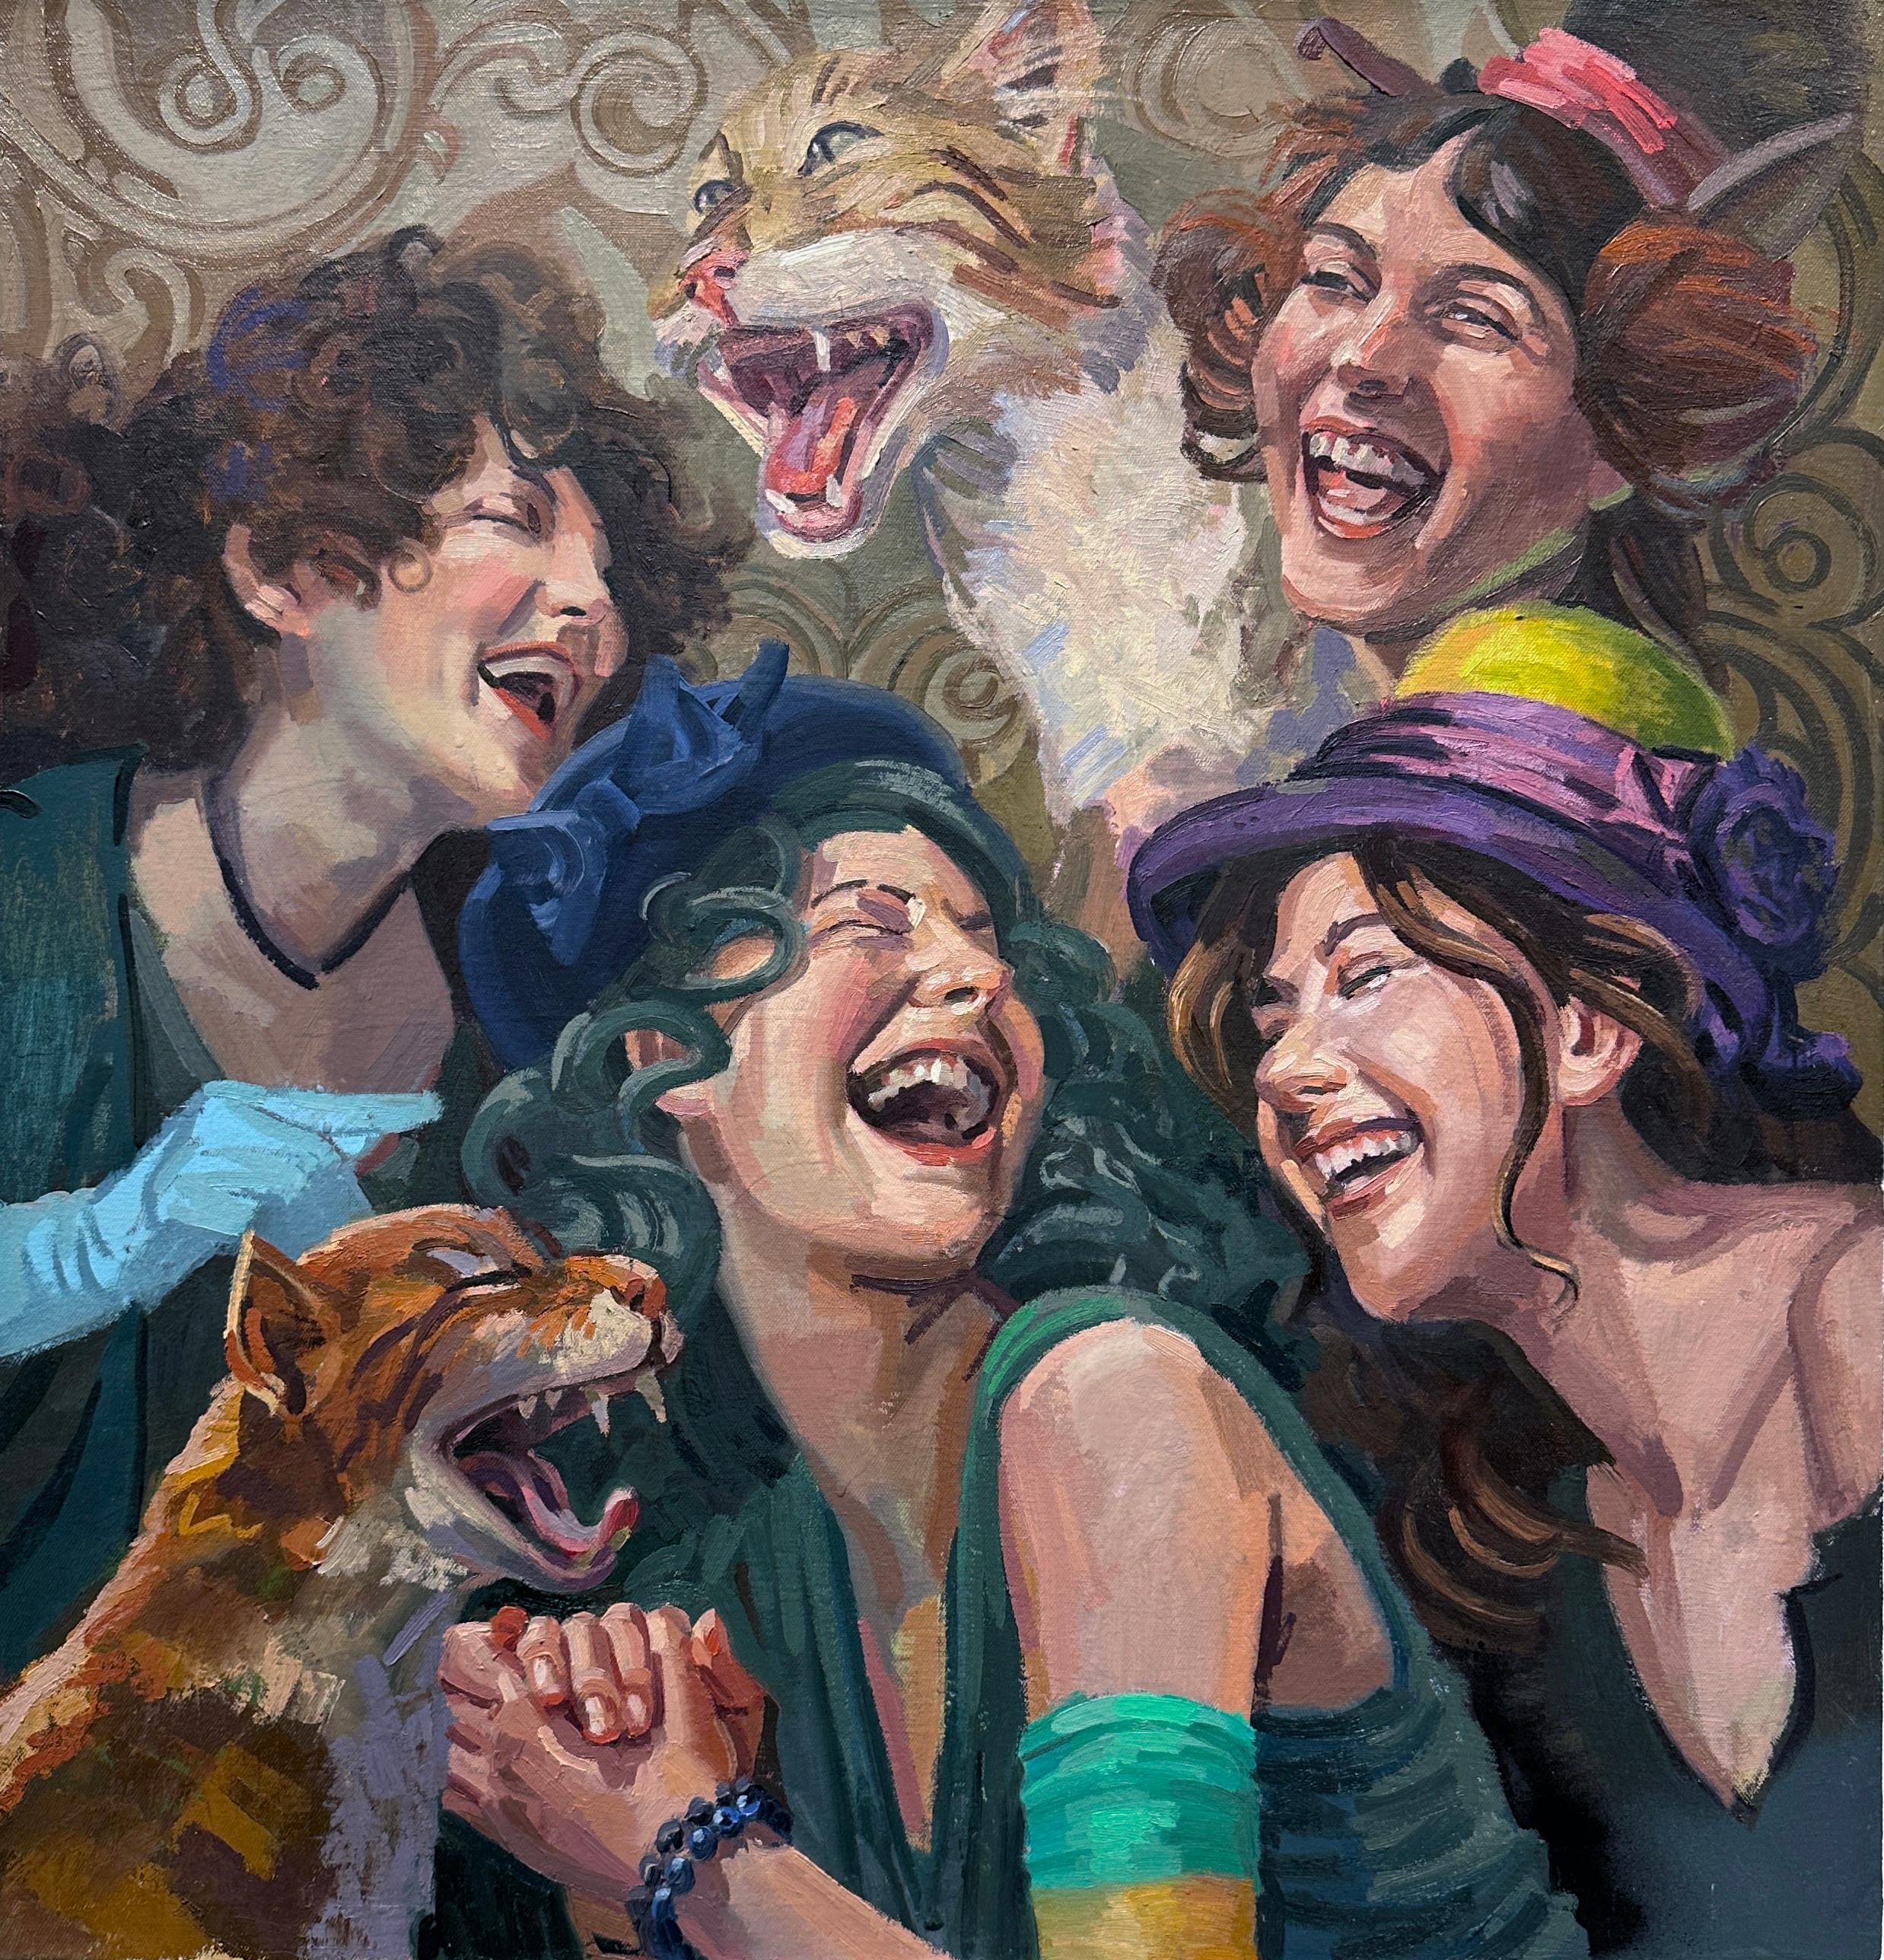 Benjamin Duke Figurative Painting – Hysterical Kats - Szene mit lachenden Katzen und gut gekleideten Frauen, Original Öl